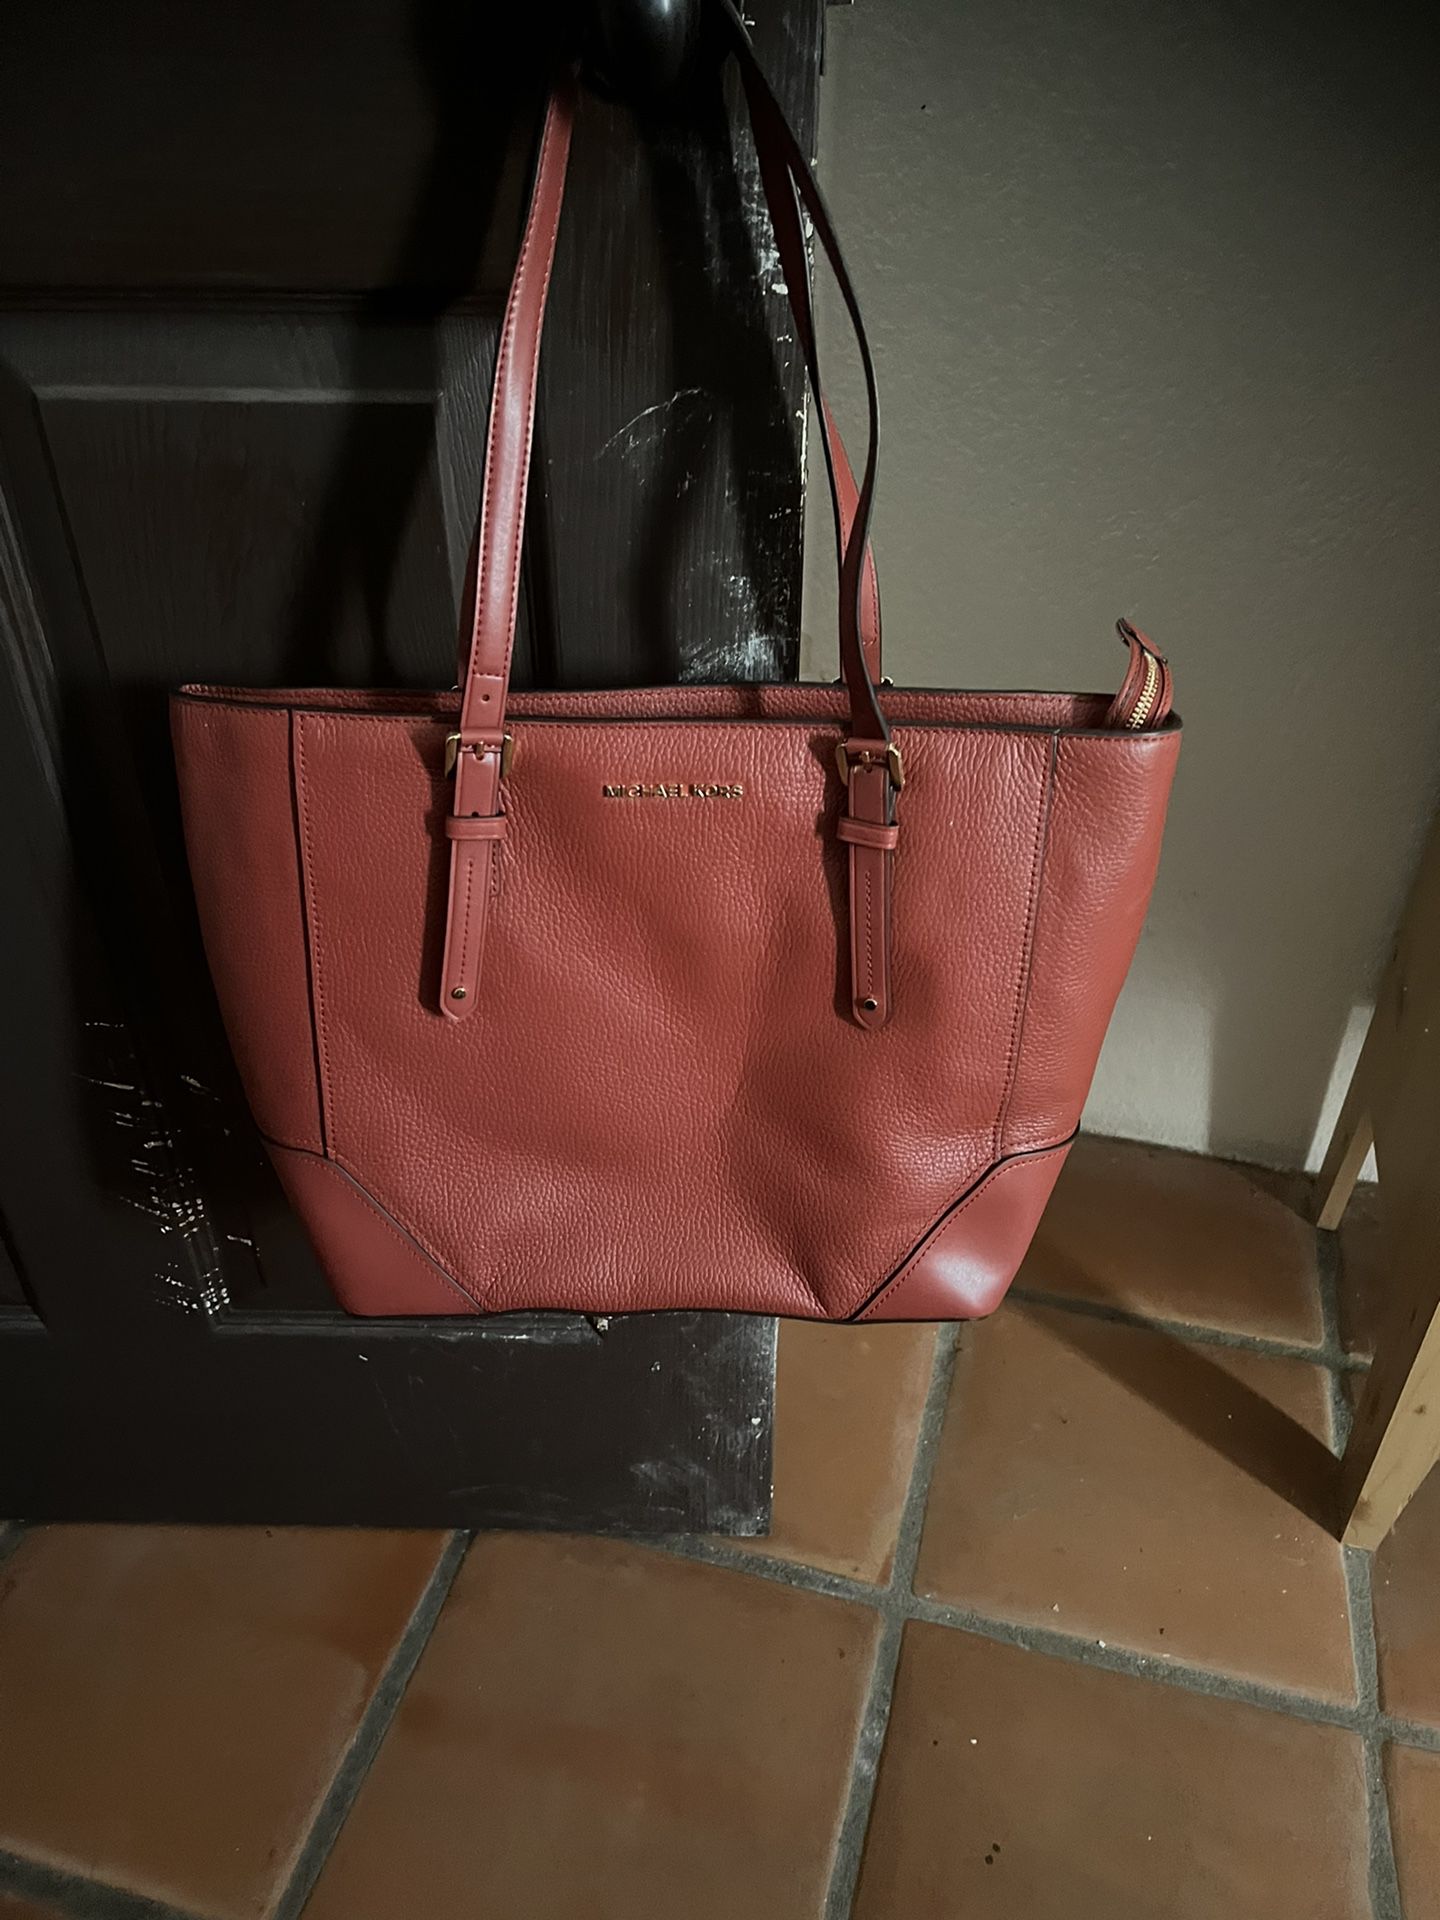 michael kors handbags new with tags